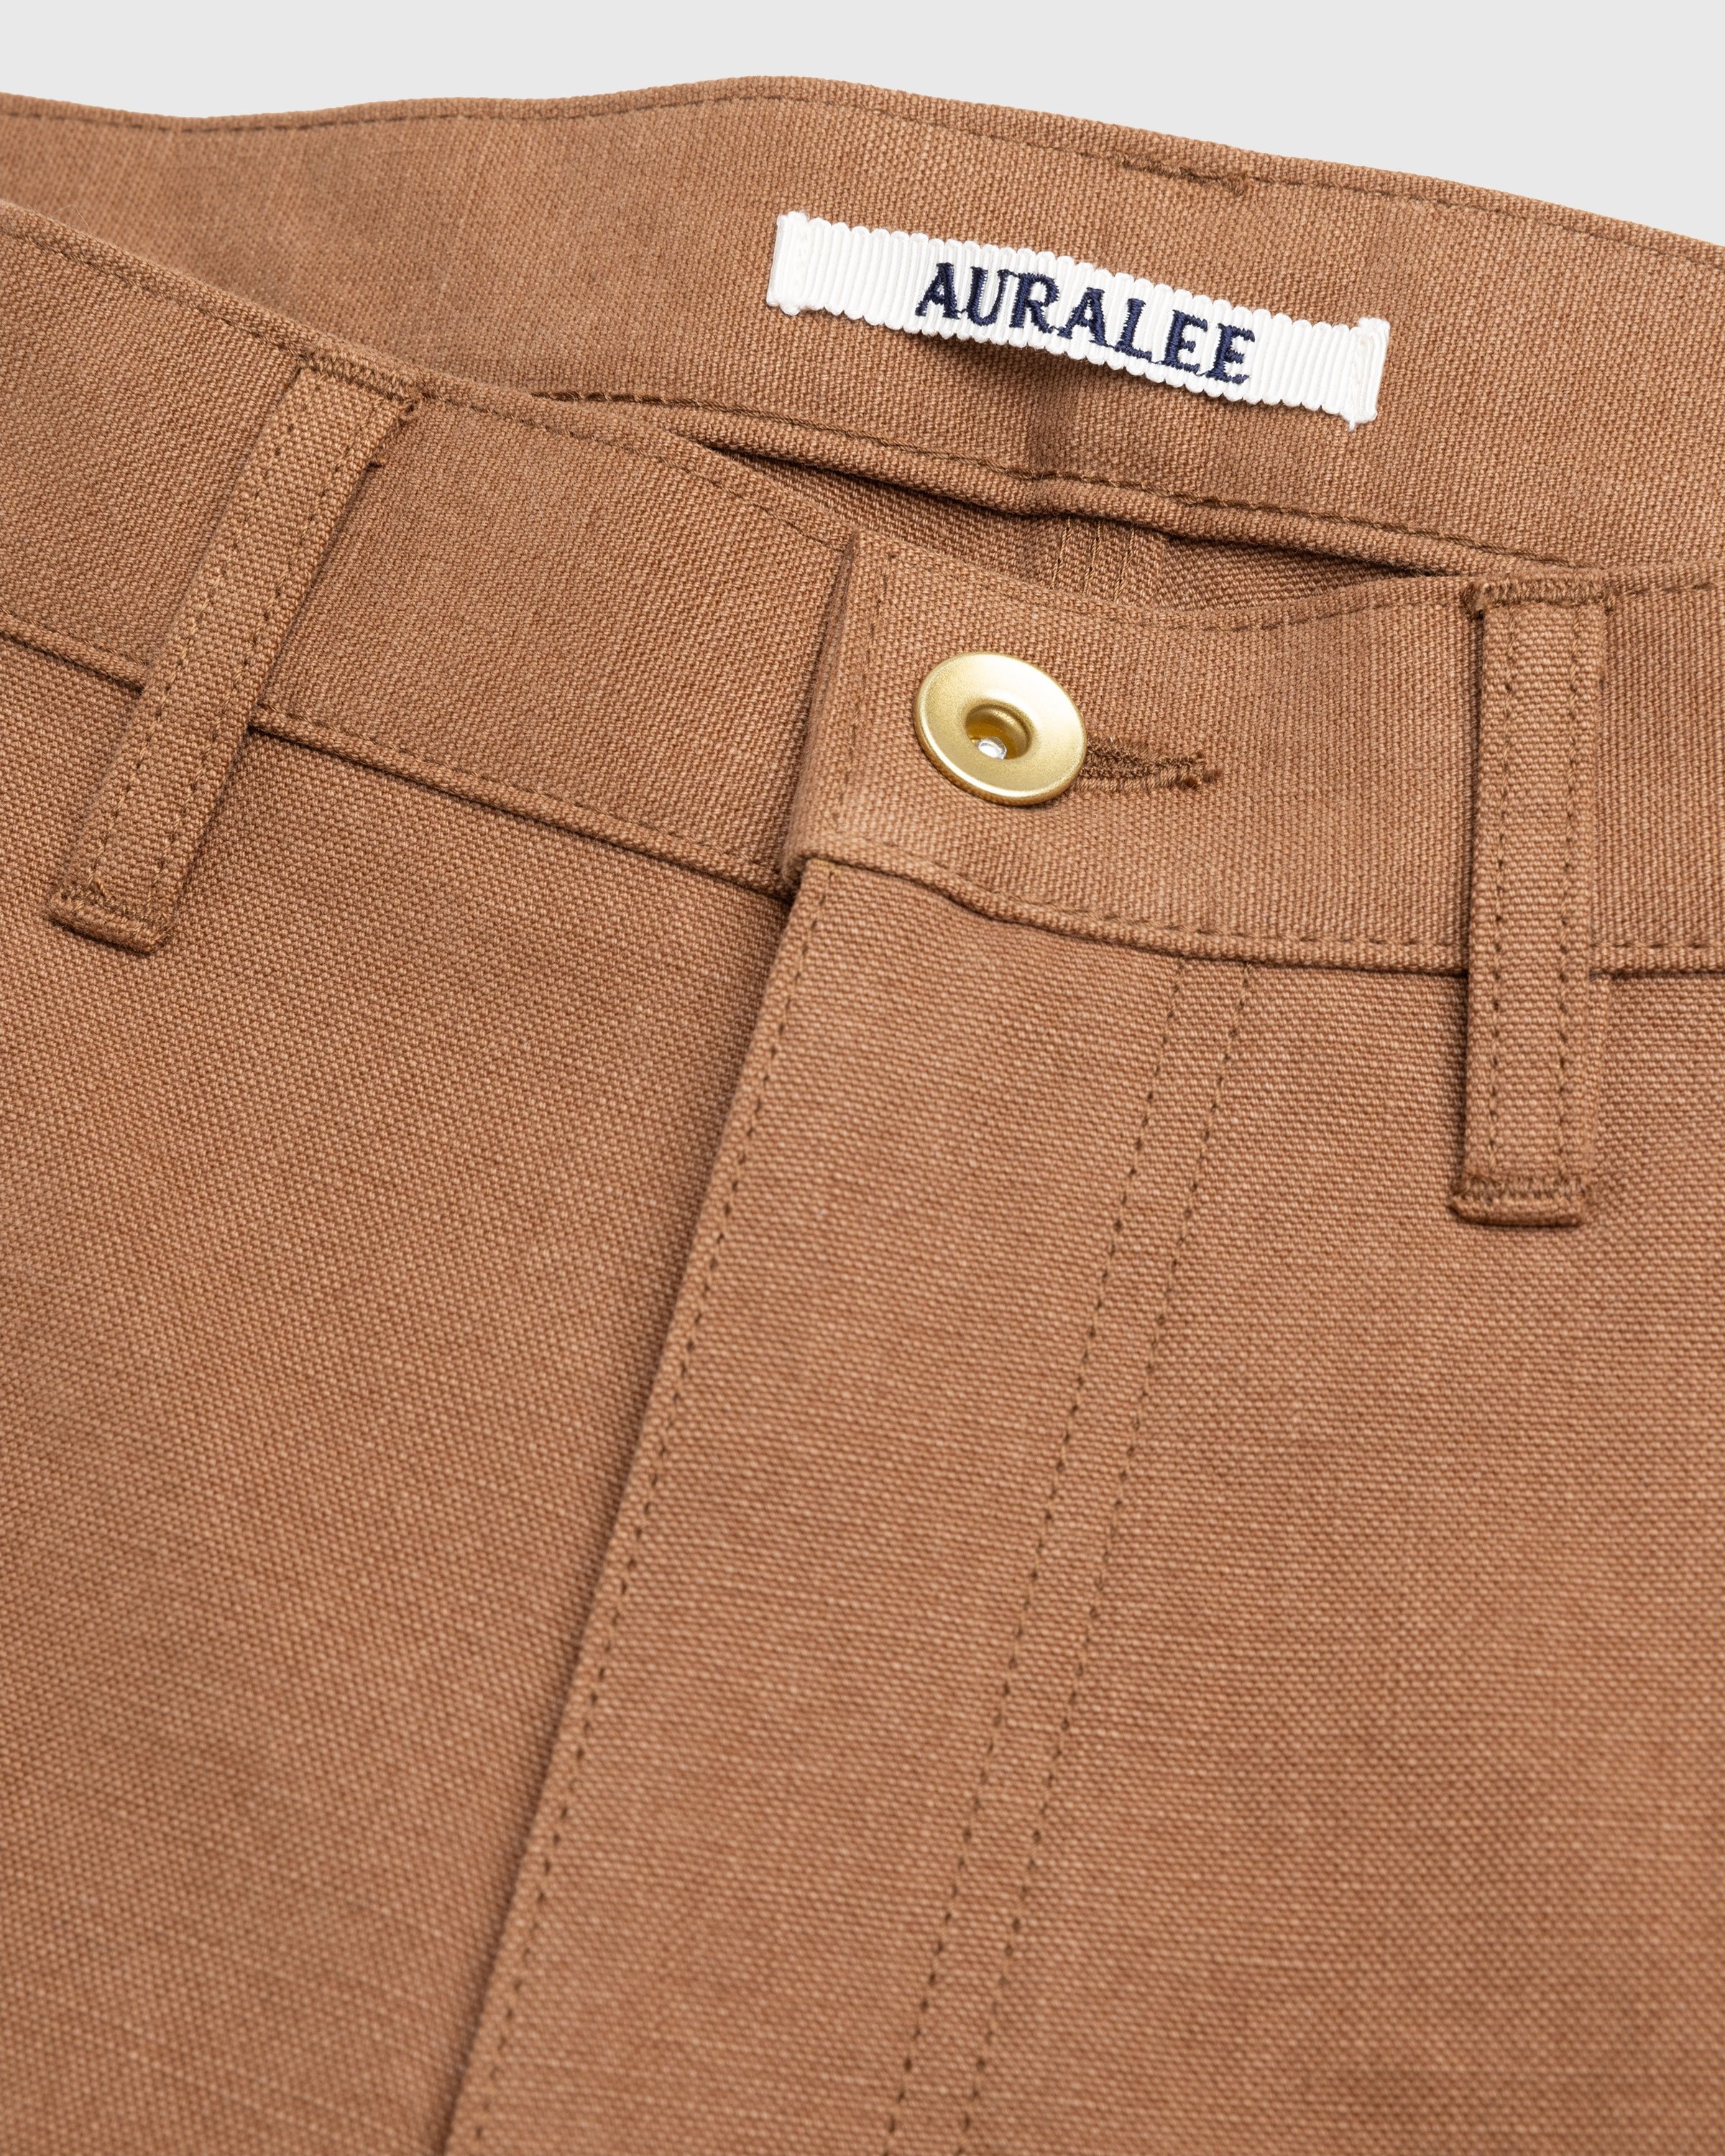 Auralee – Hard Twist Denim 5P Pants Brown   Highsnobiety Shop